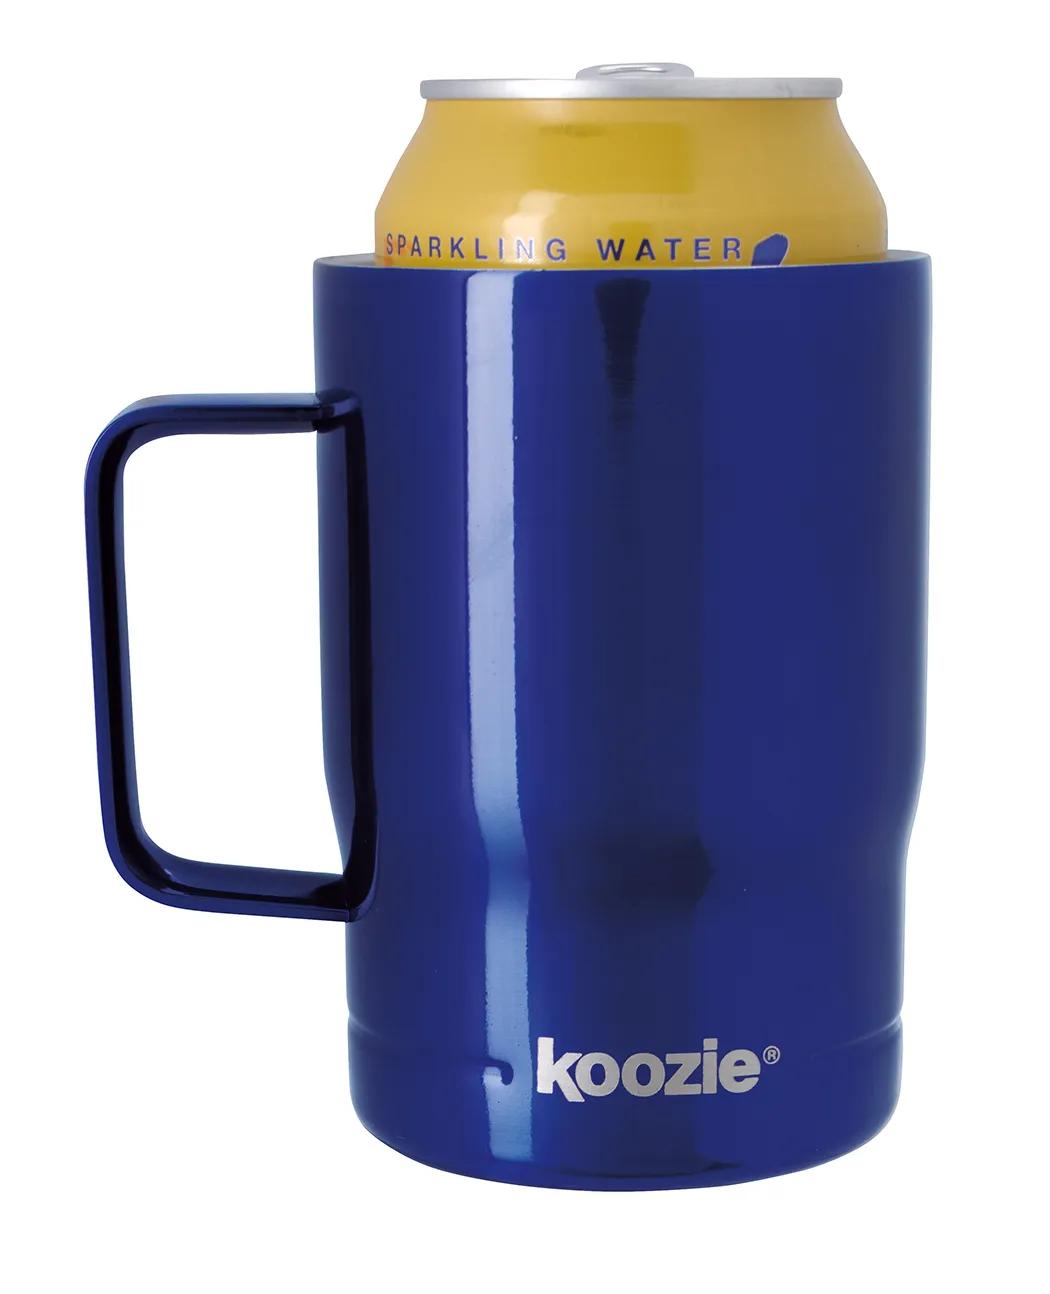 Koozie® Campfire Mug 2 of 52